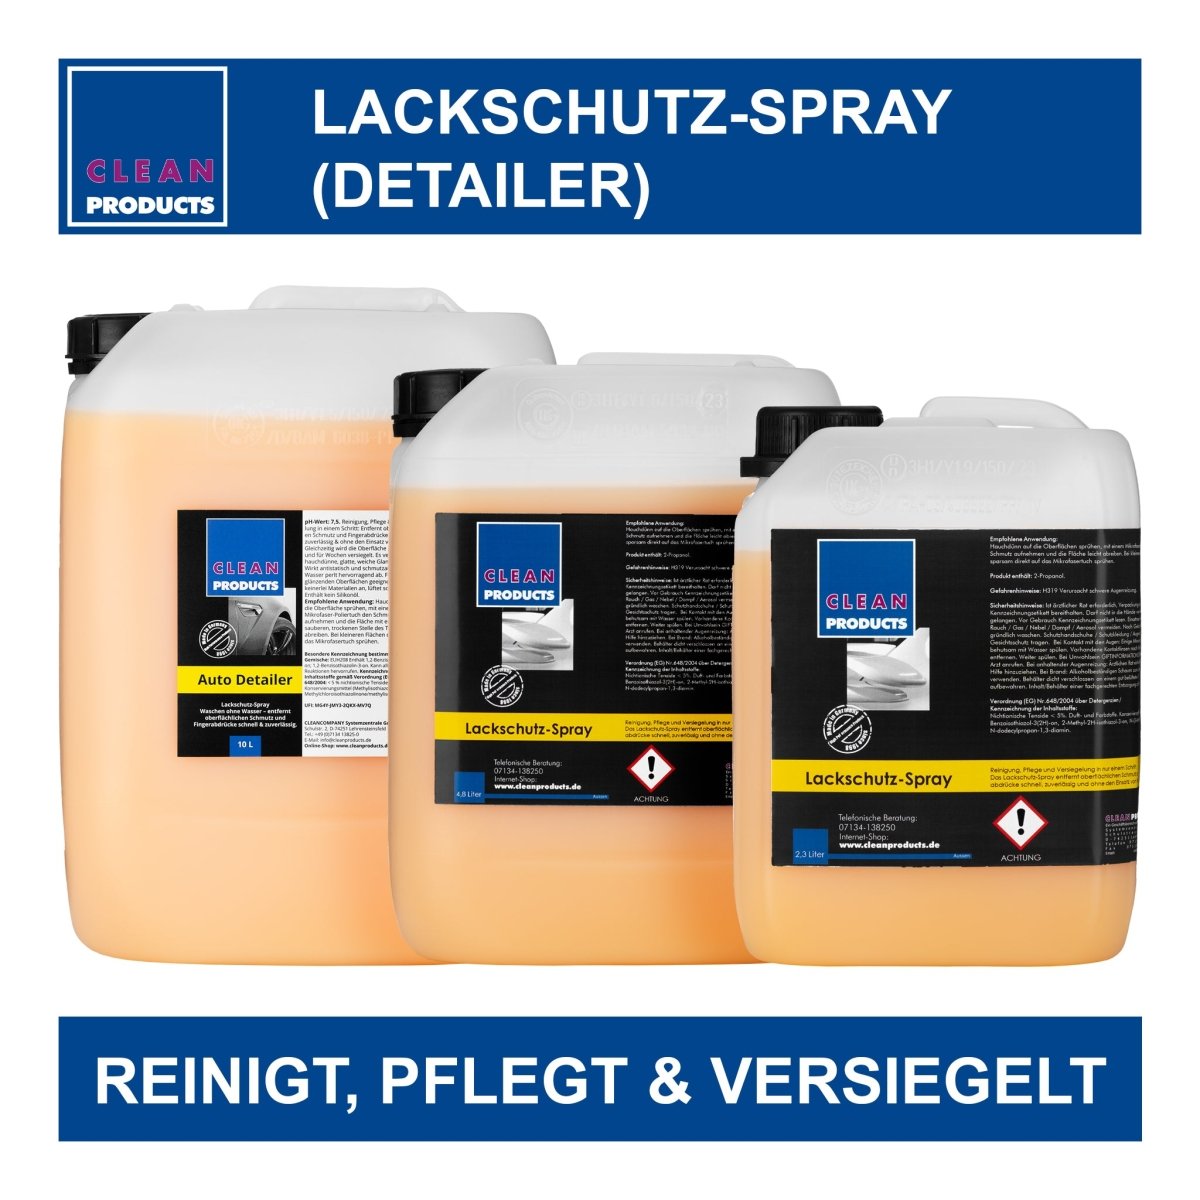 Lackschutz-Spray (Detailer) - 10 Liter - CLEANPRODUCTS